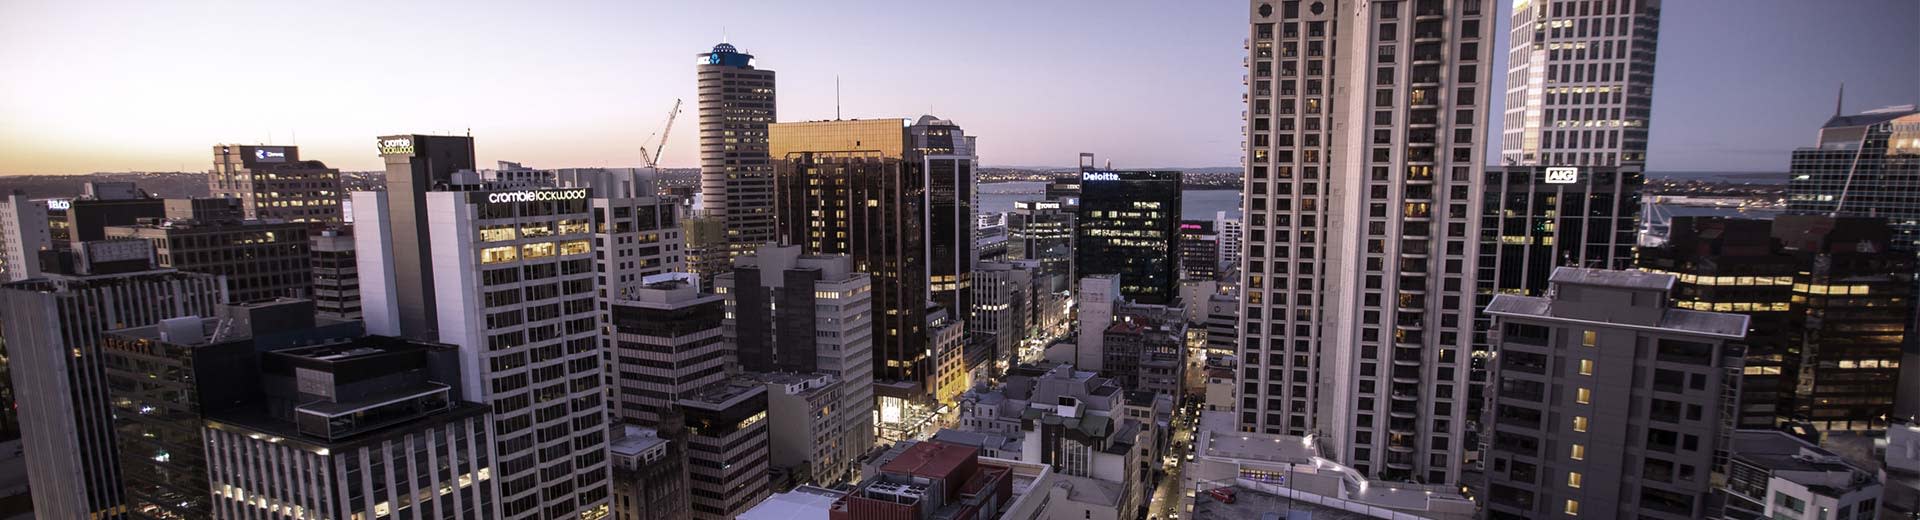 Auckland City Skyline al anochecer, con rascacielos que dominan el primer plano.